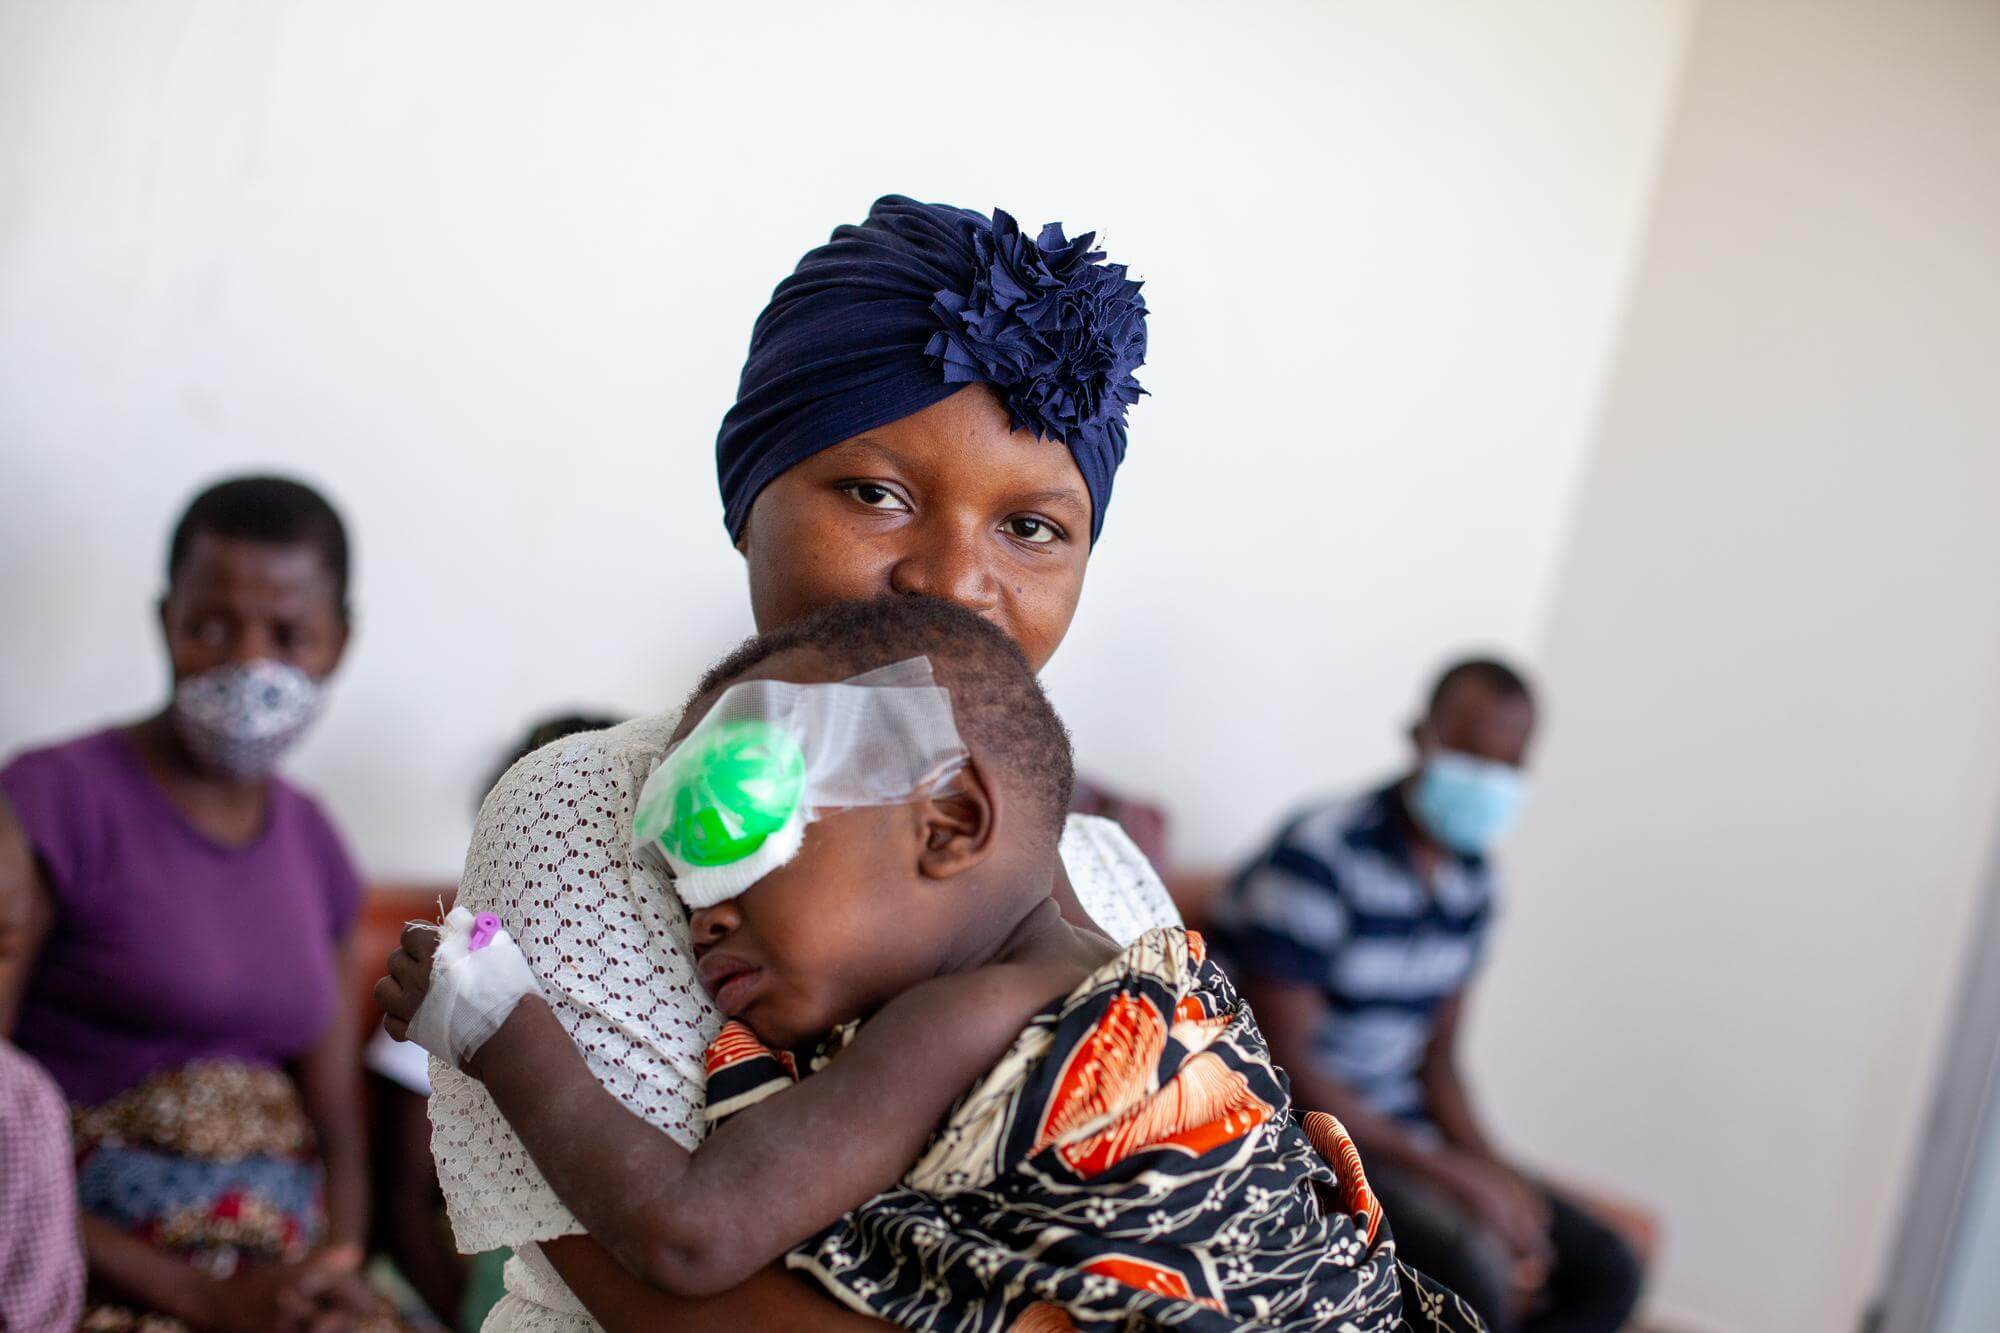 Nadja aus Mosambik hält ihren Sohn Ainyr in den Armen nachdem er am Grauen Star operiert wurde. Der kleine Bub hat einen Verband am linken Auge und ist in eine bunte Decke gewickelt.